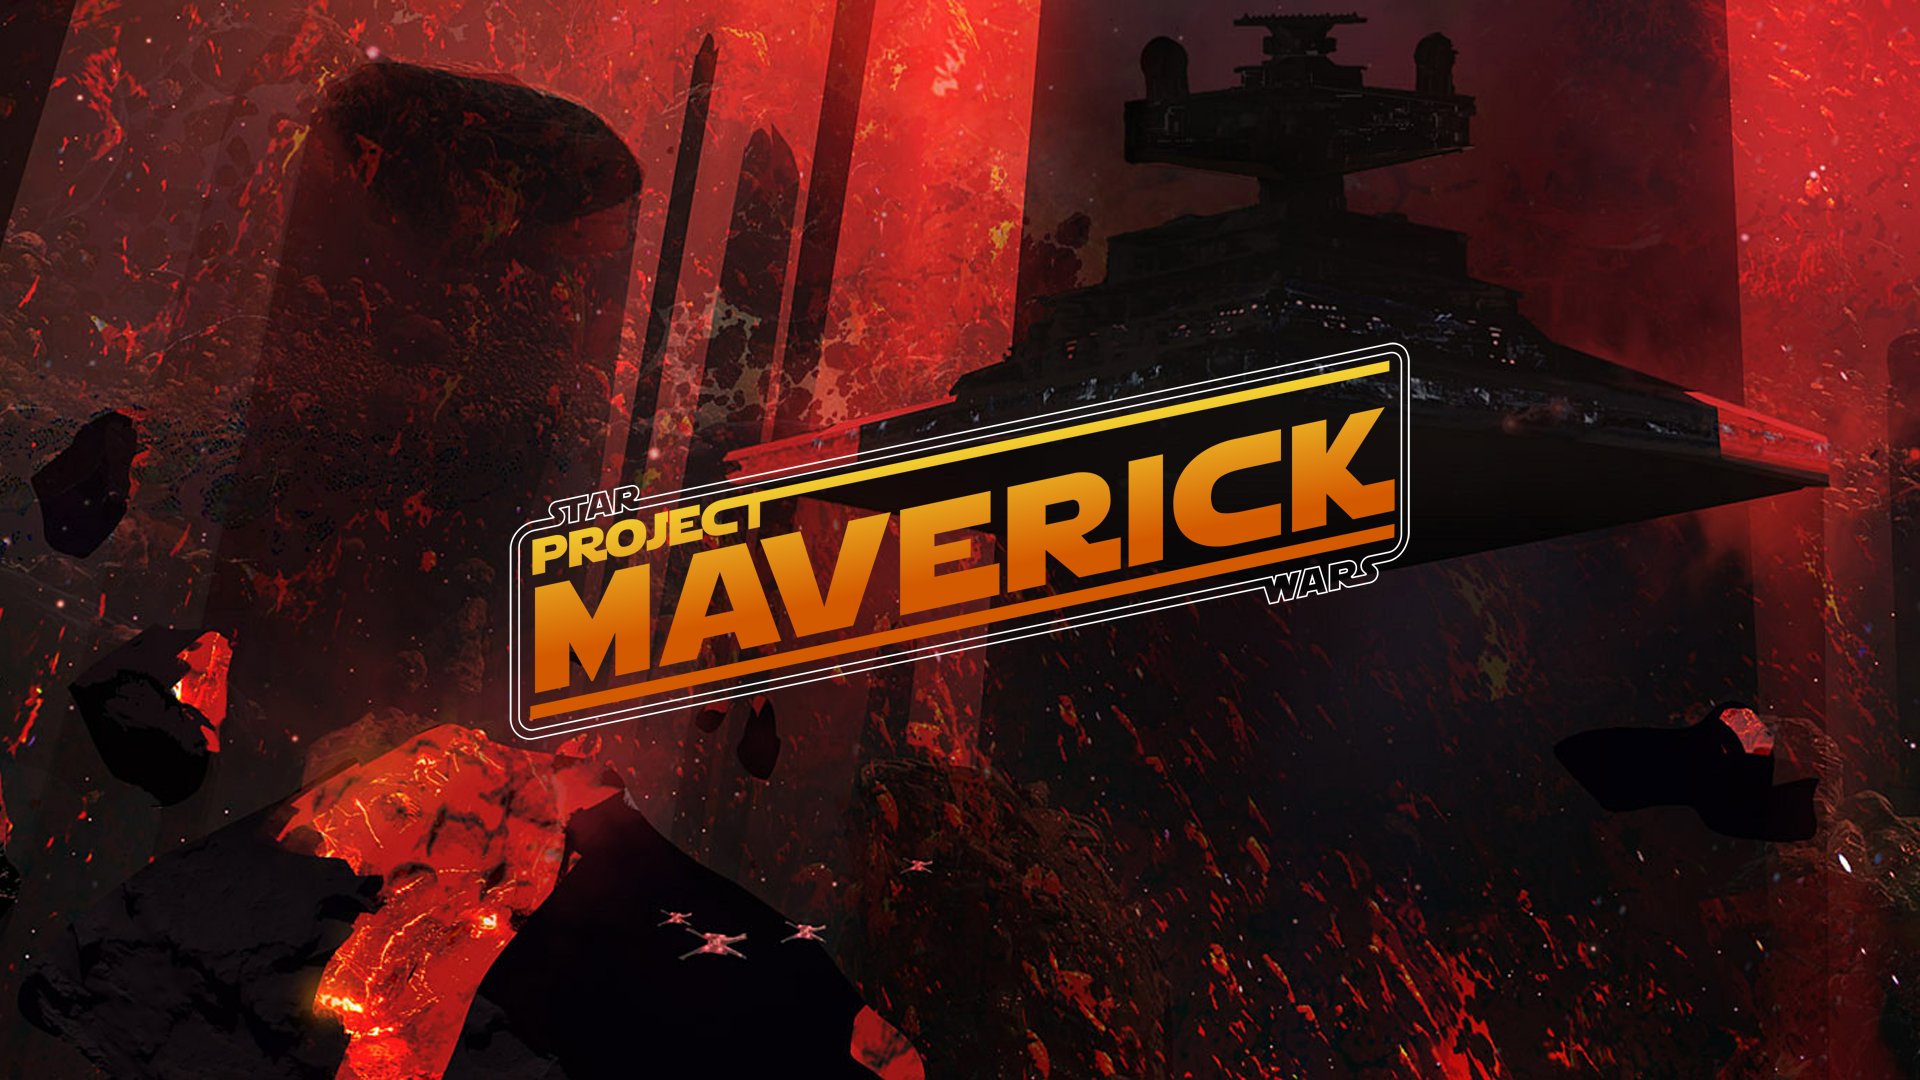 PlayStation Store ของยุโรปหลุดรายชื่อ Star Wars: Project Maverick